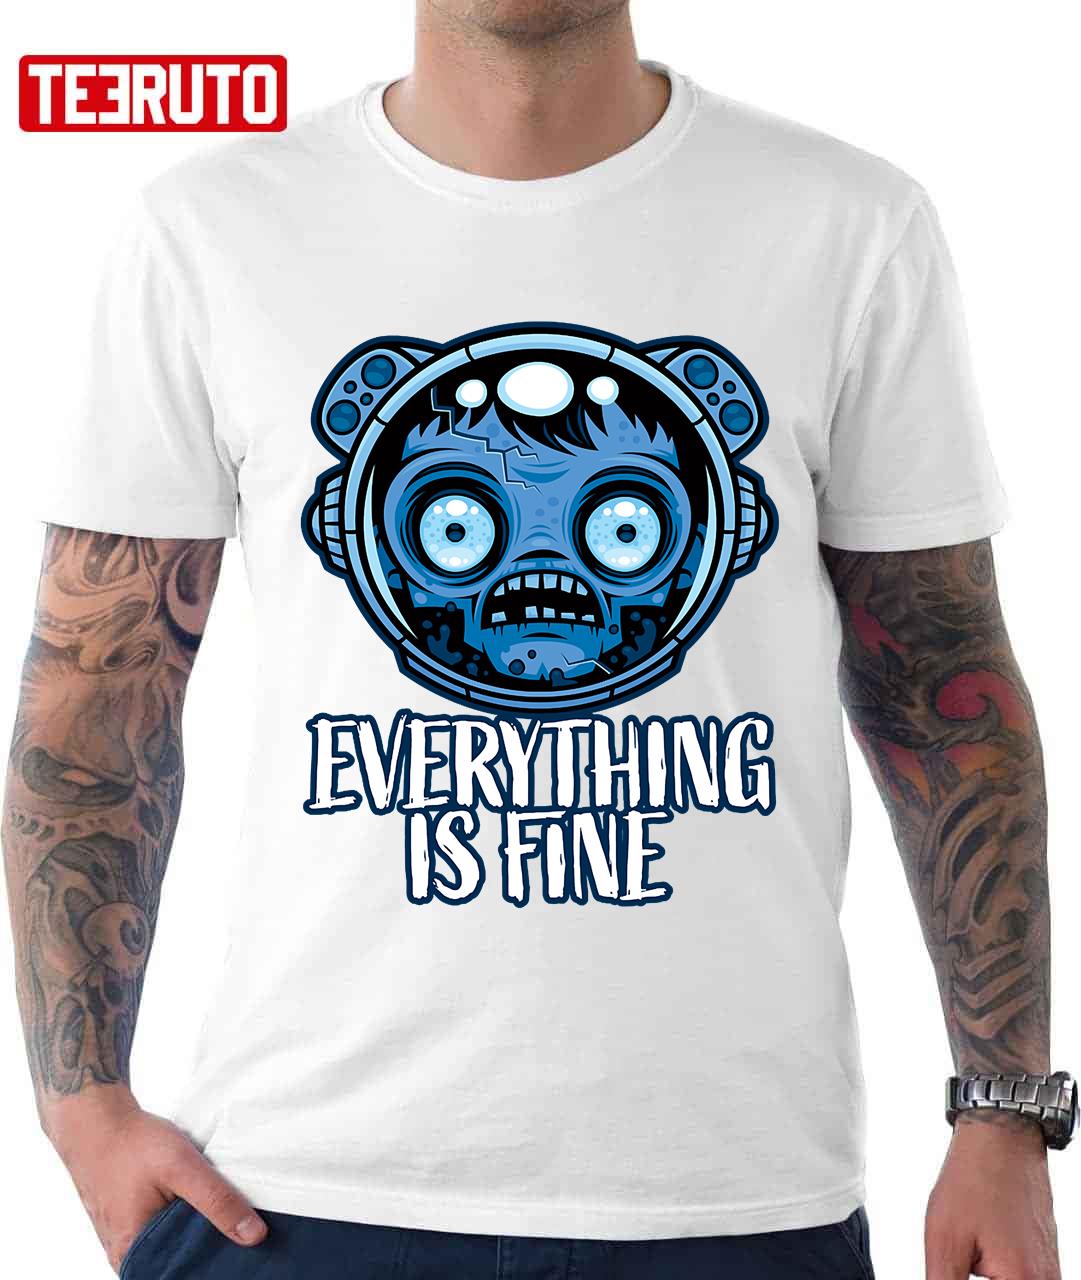 Zombie Astronaut Is Fine Unisex T-Shirt